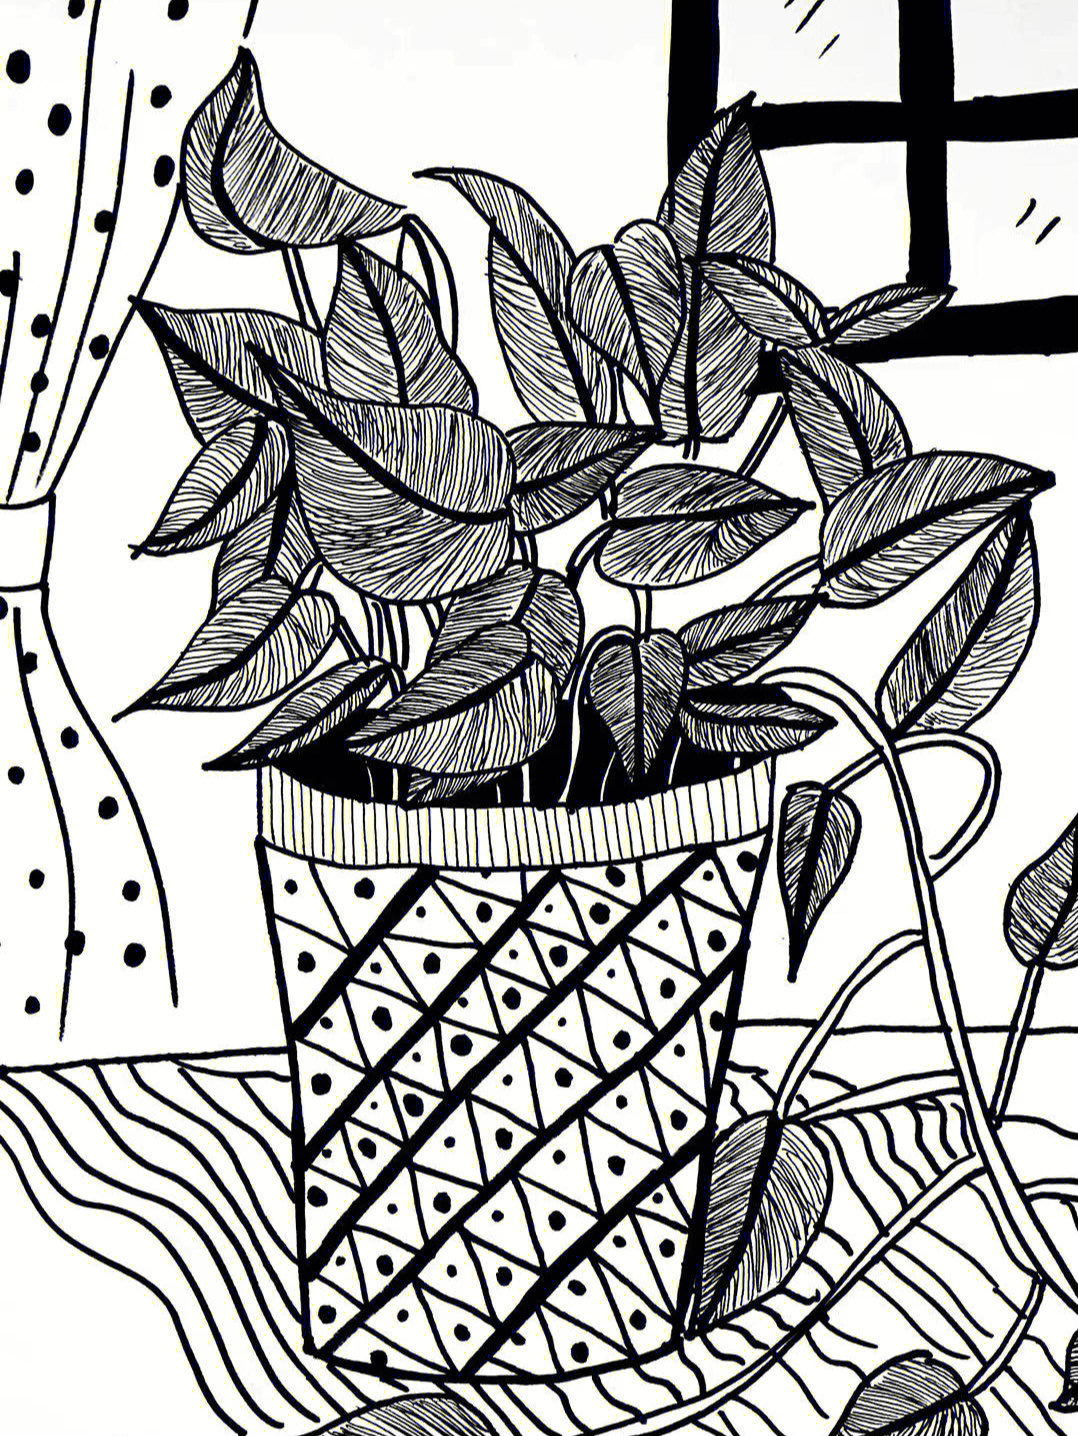 植物写生线描简单图片